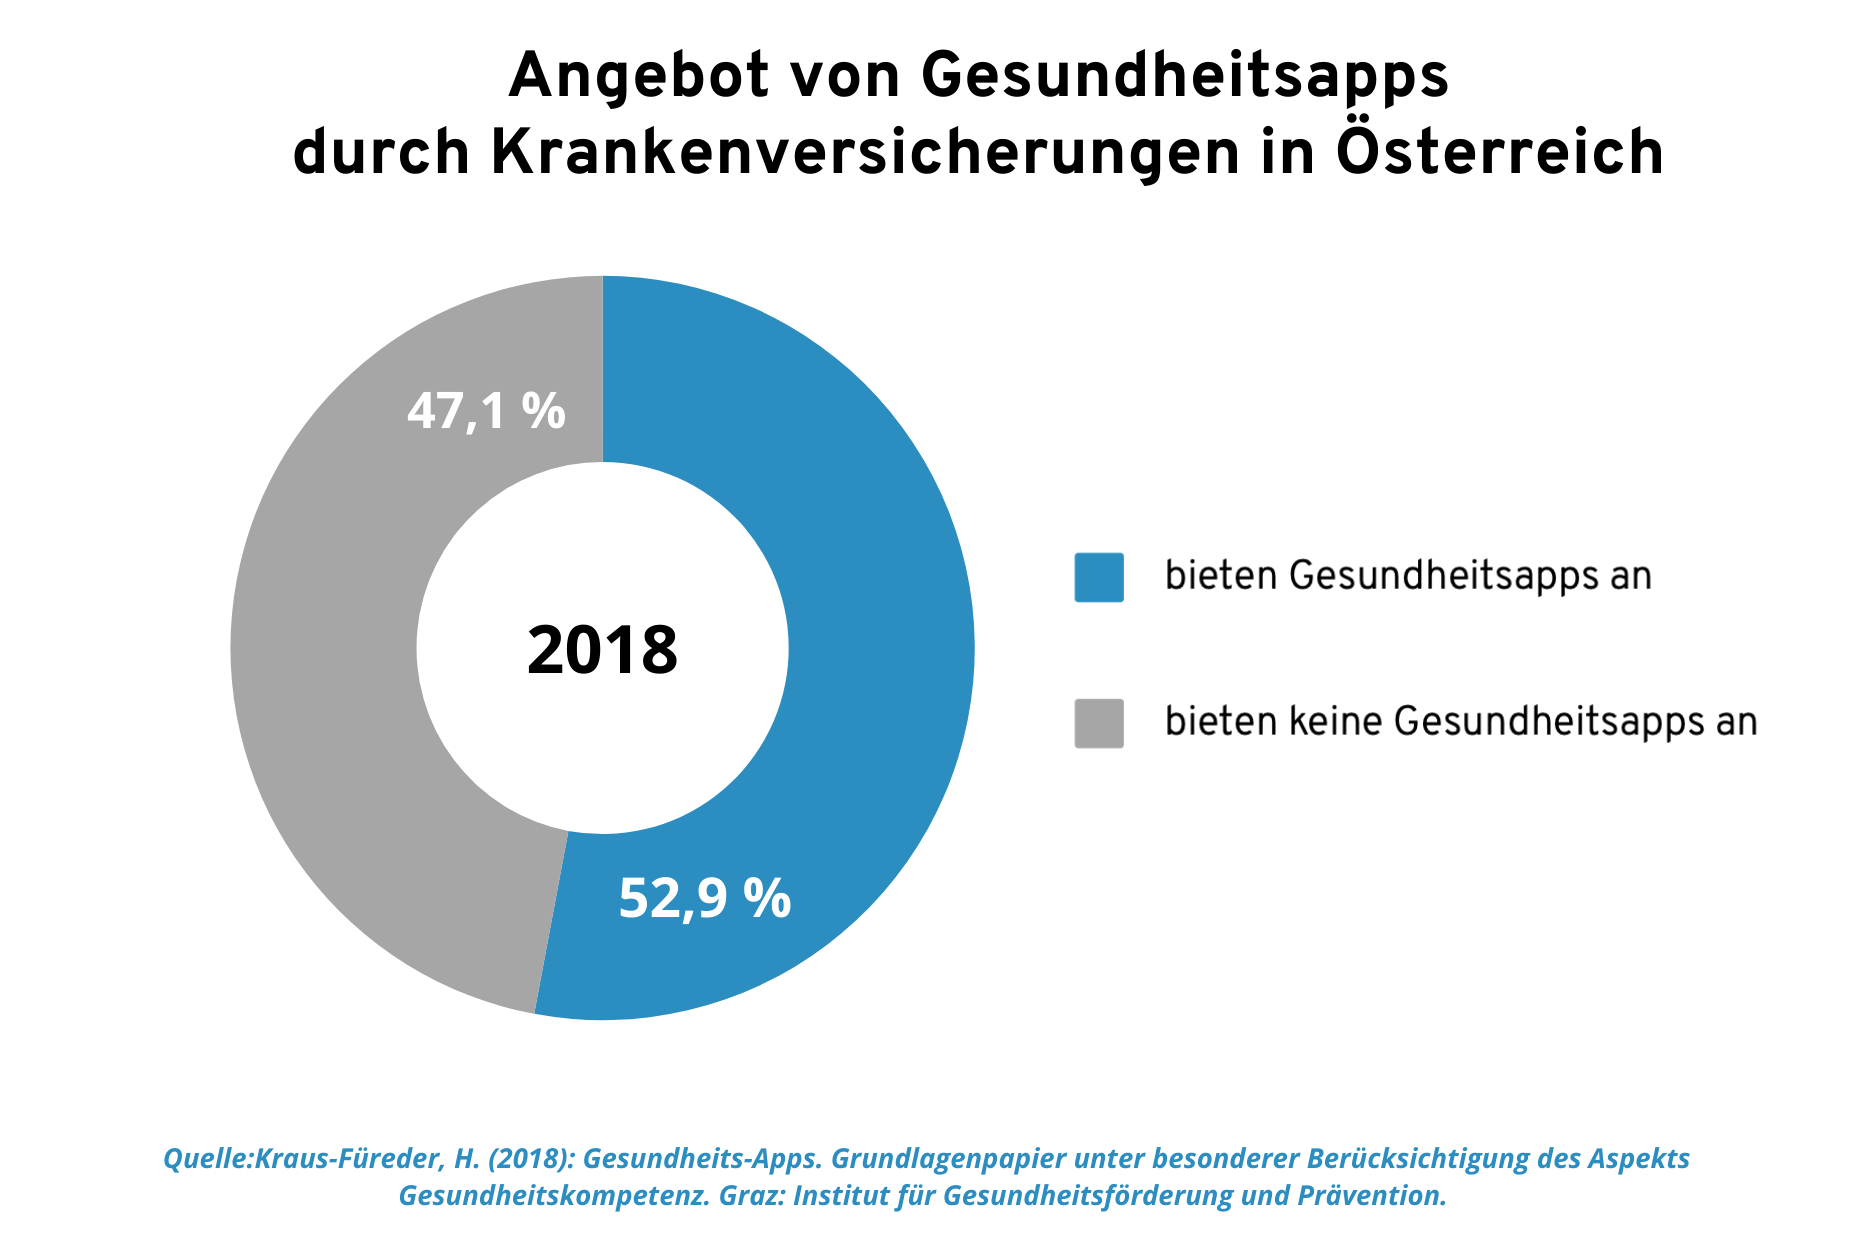 Grafik: Angebot von Gesundheitsapps durch Krankenversicherungen in Österreich in 2018